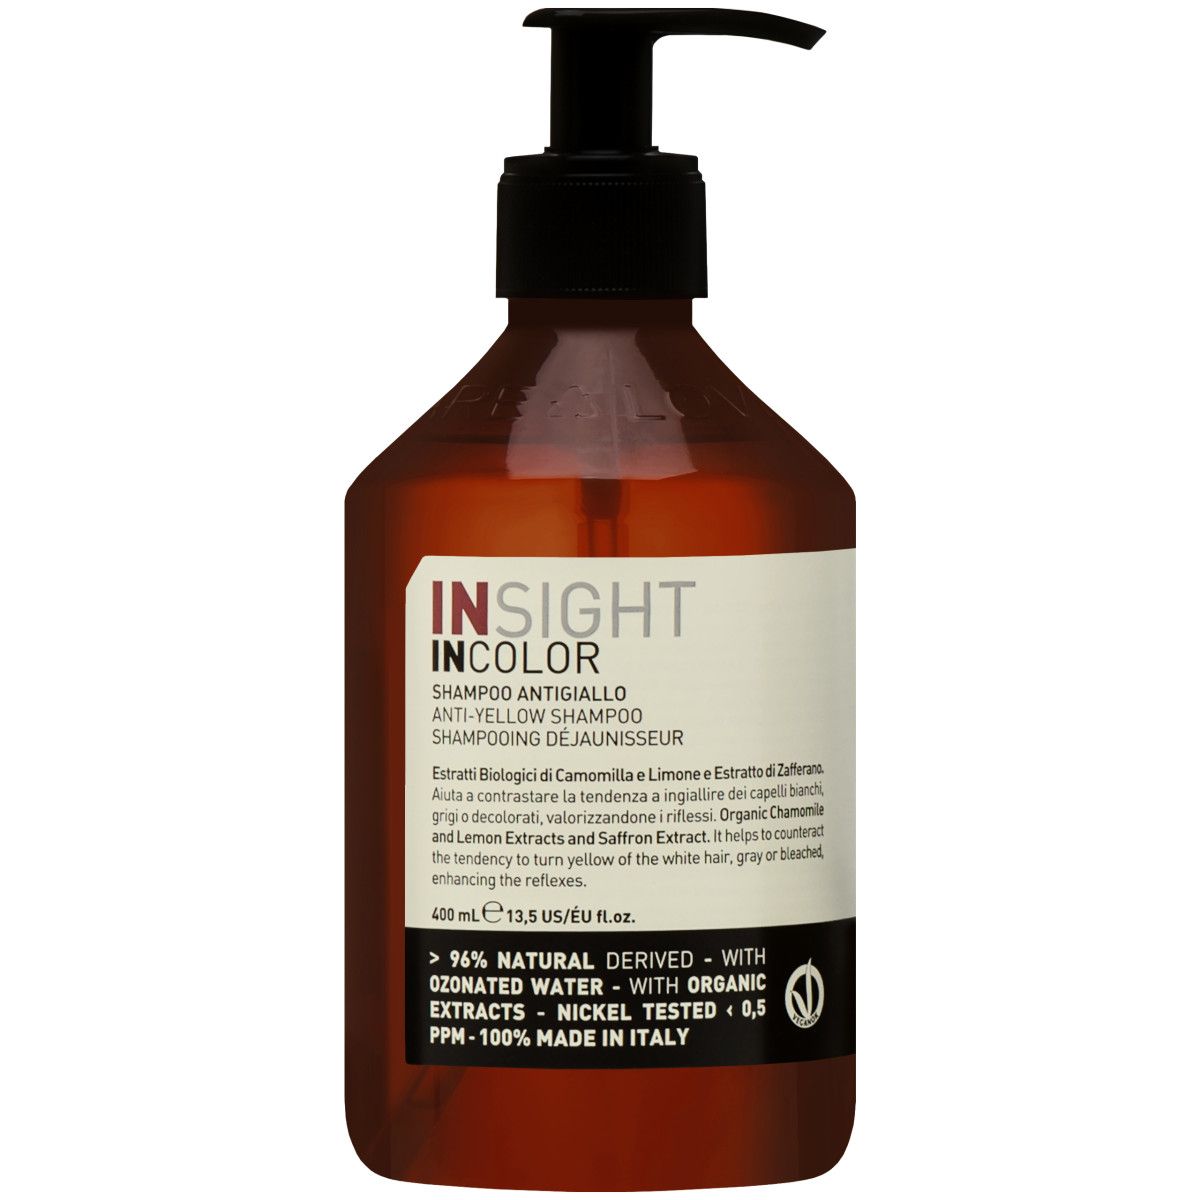 Insight Incolor Anti Yellow Shampoo - szampon niwelujący żółte odcienie, 400ml